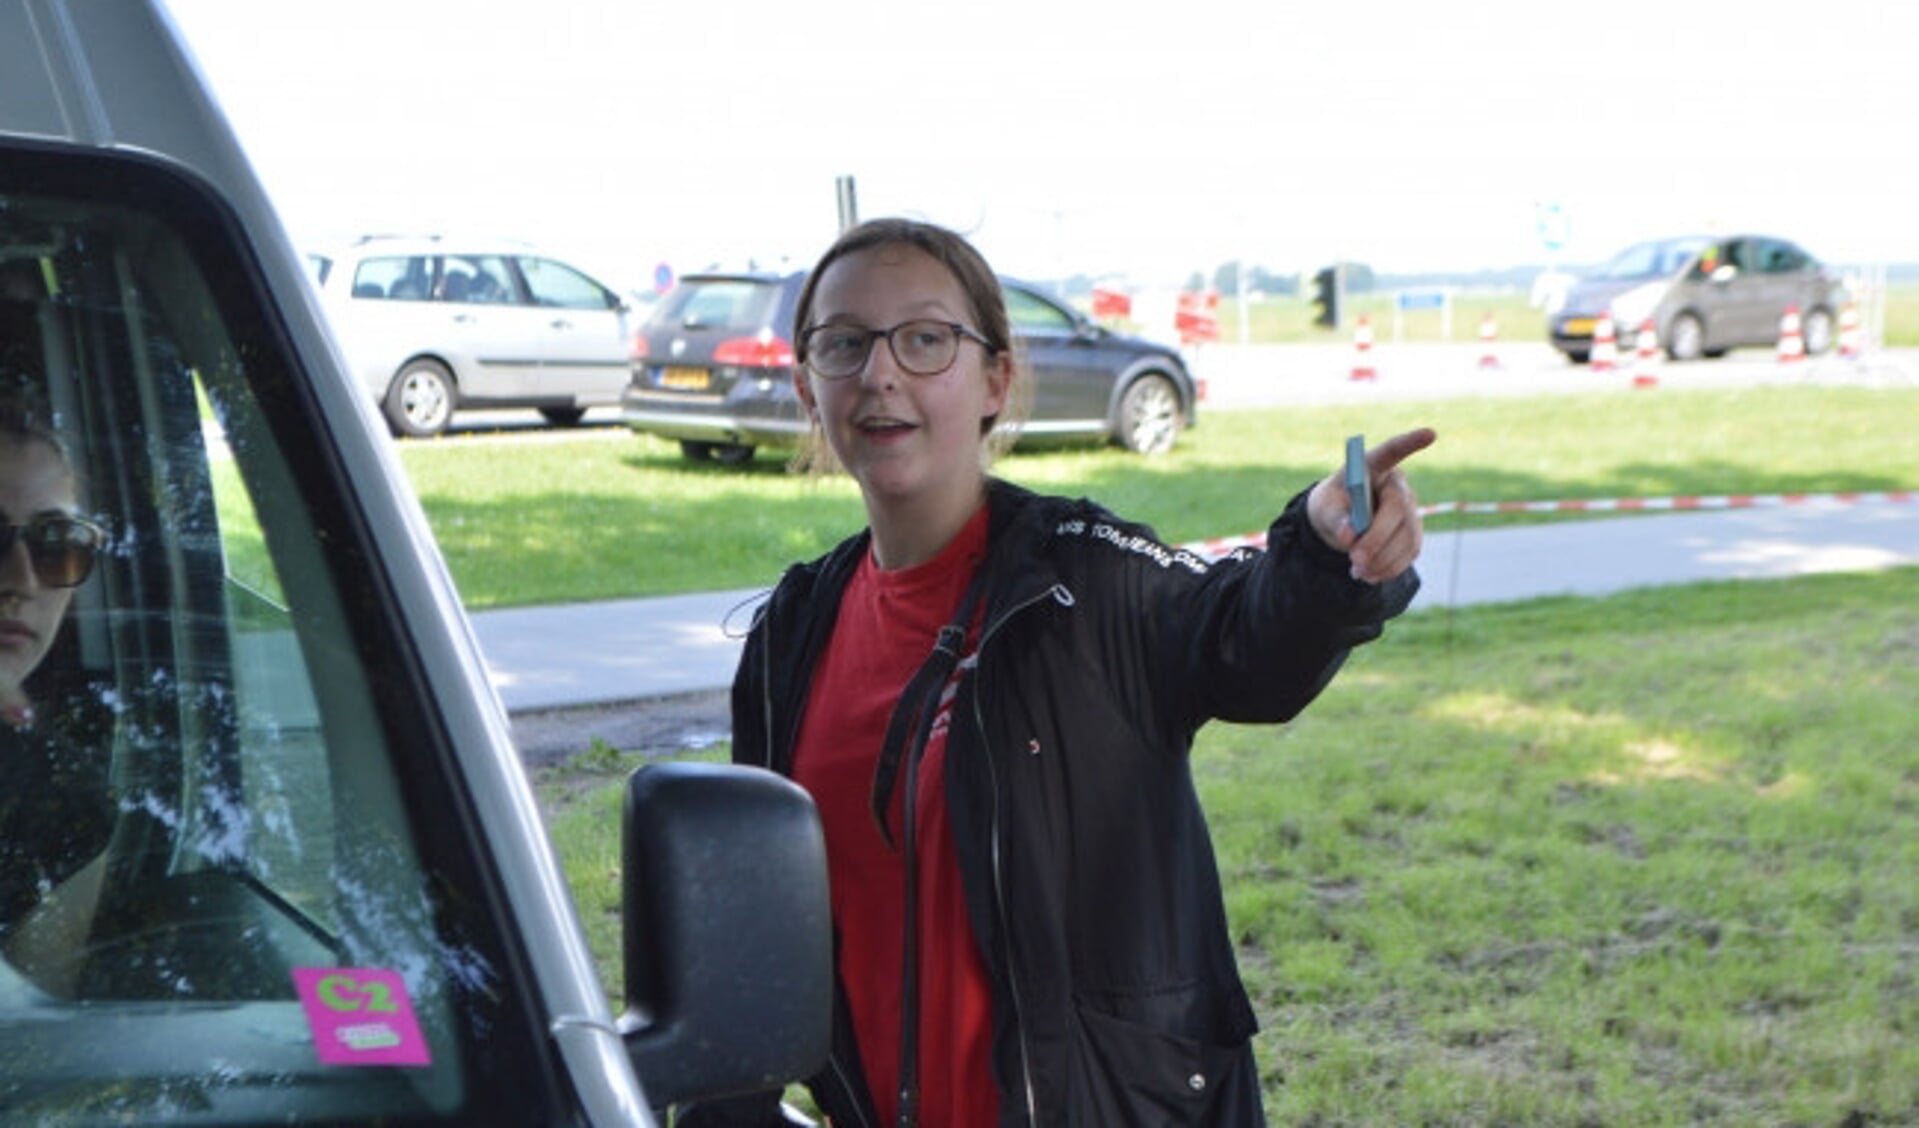  Jody Deurloo aan het werk tijdens de autocross in Biddinghuizen.